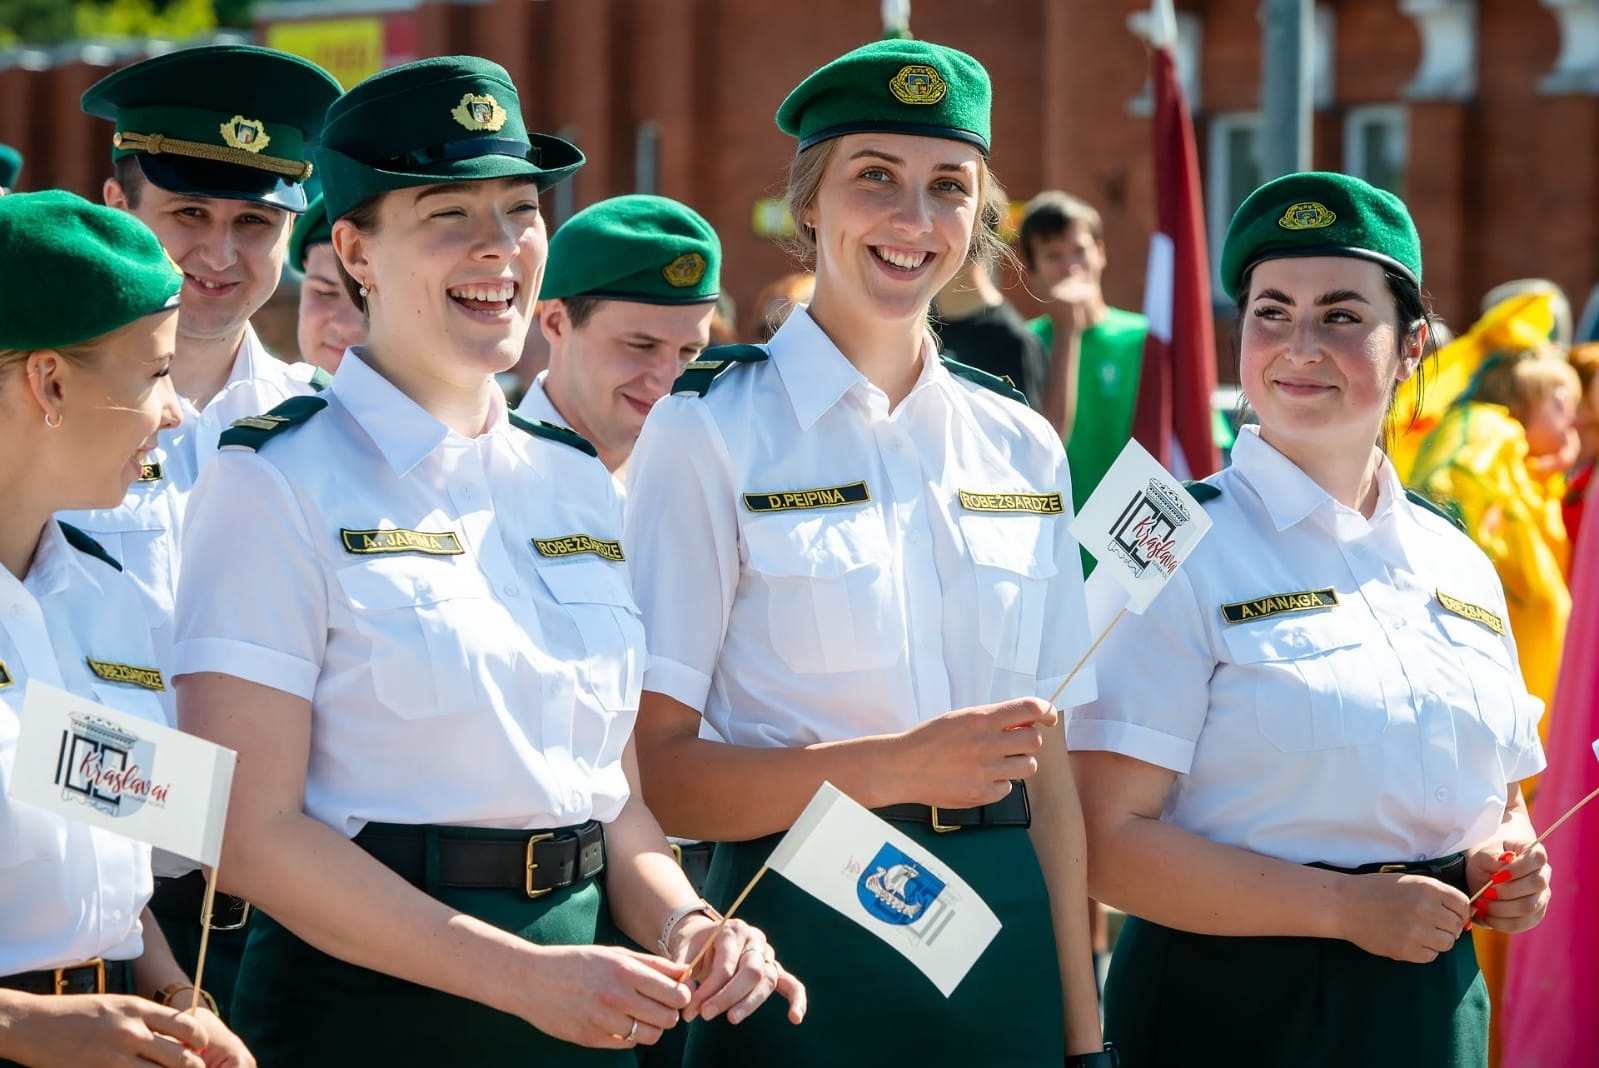 Valsts robežsardzes Daugavpils pārvalde ar godu un lepnumu piedalās Krāslavas simtgades svinību pasākumos